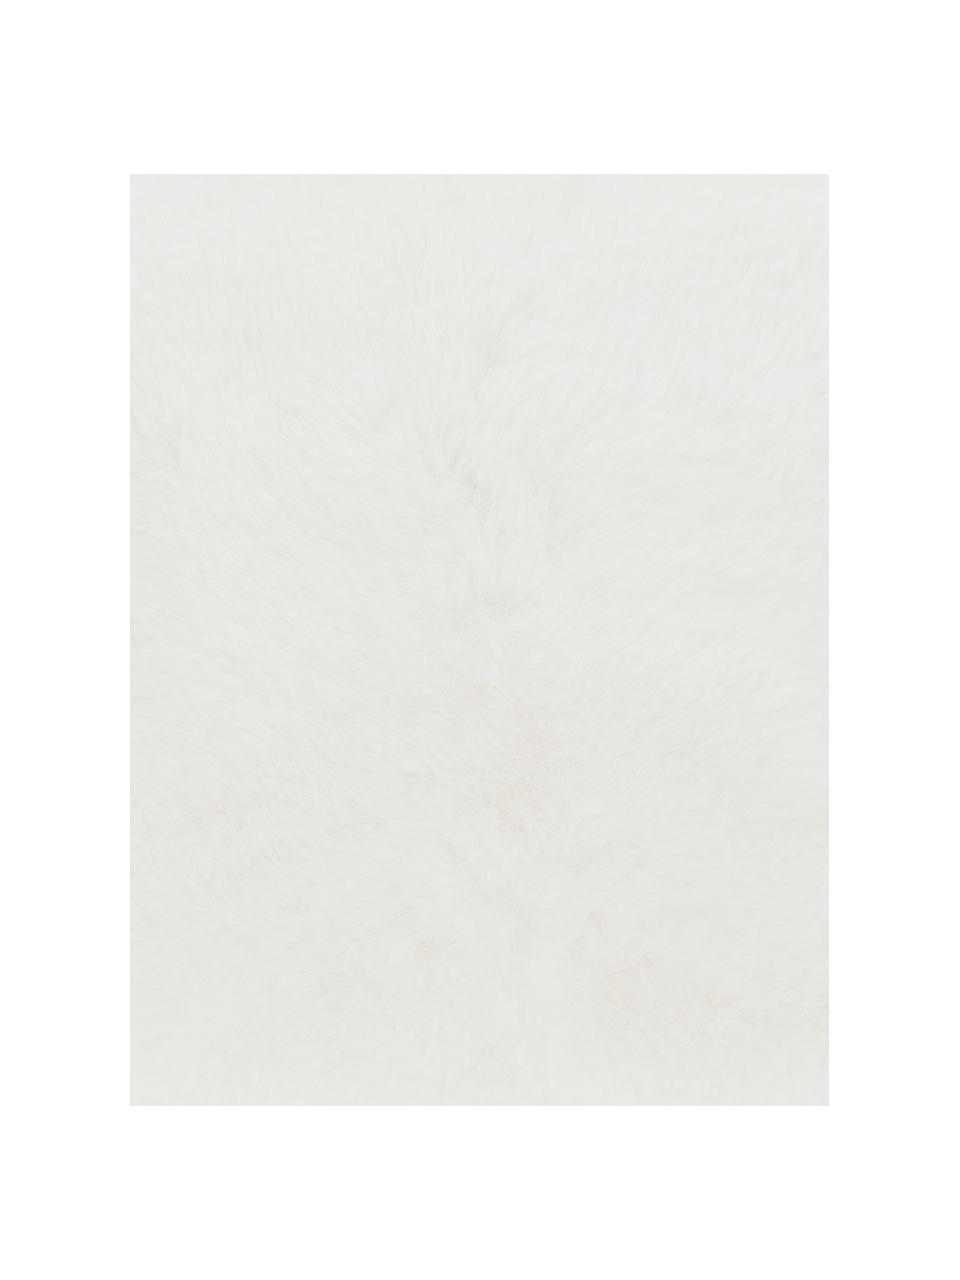 Manta de piel sintética Mette, Parte superior: 100% poliéster, Parte trasera: 100% poliéster, Blanco, An 150 x L 200 cm